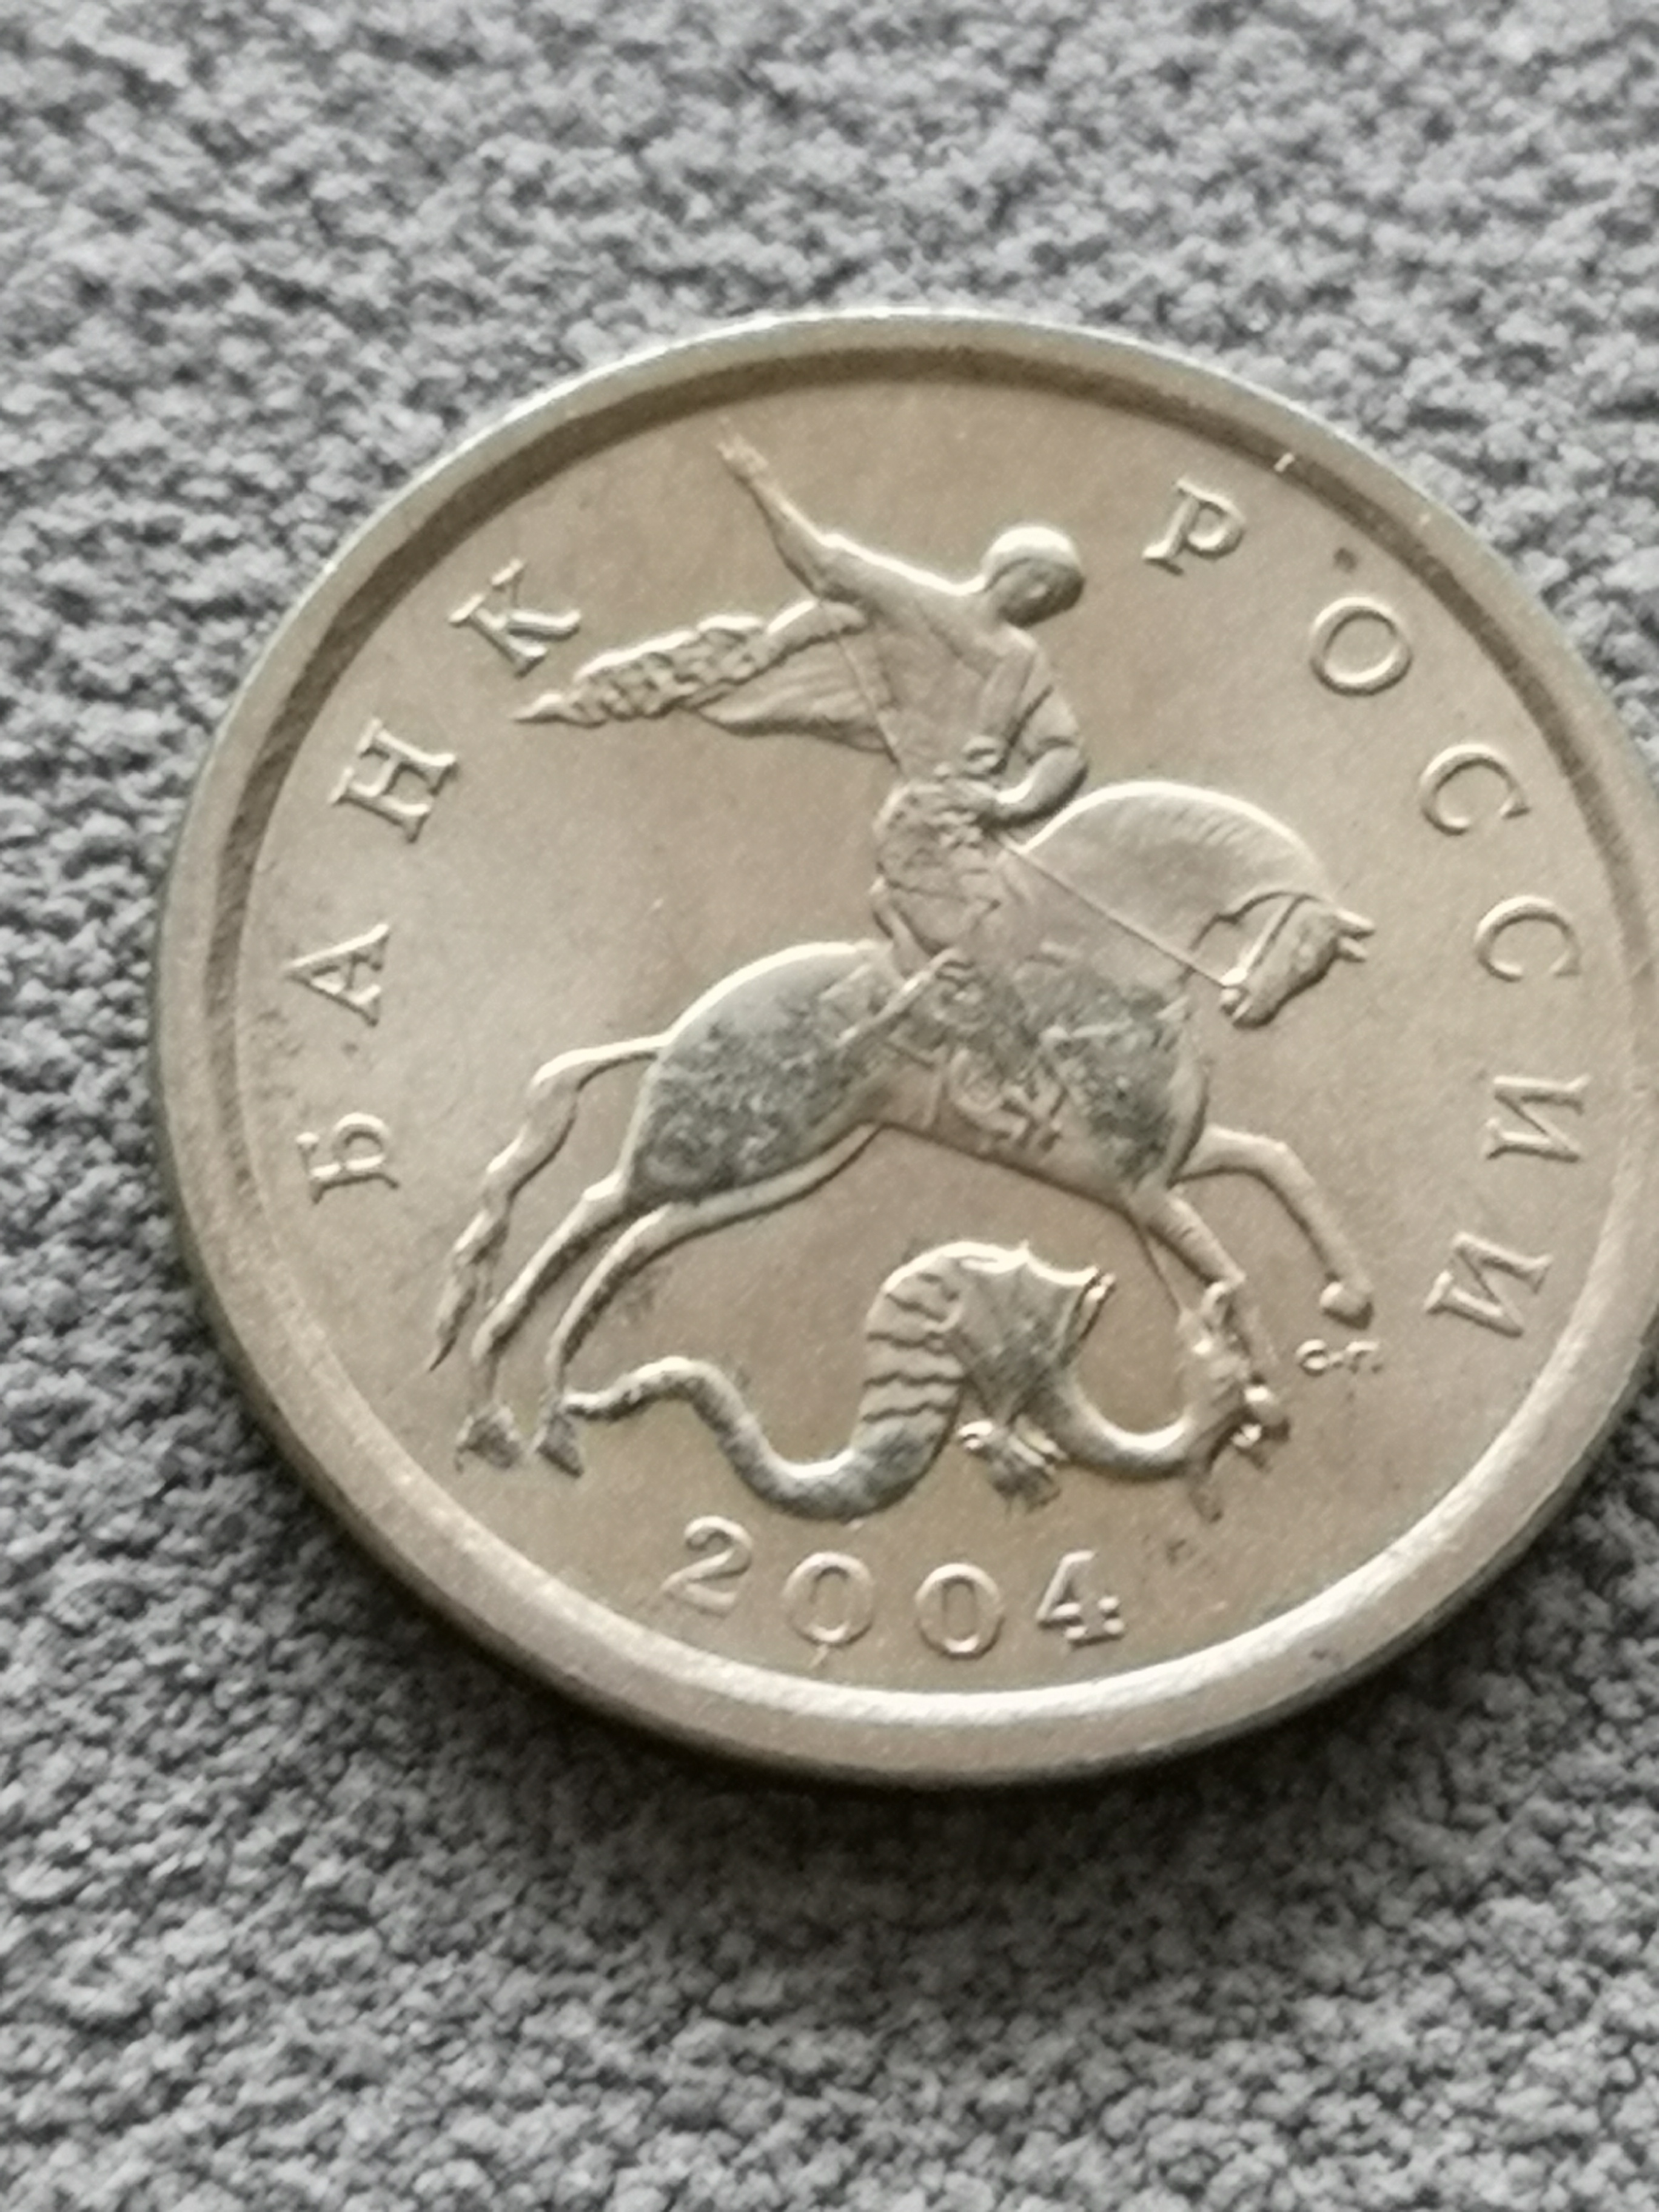 俄罗斯硬币5枚1997年2卢布1枚2014年10戈